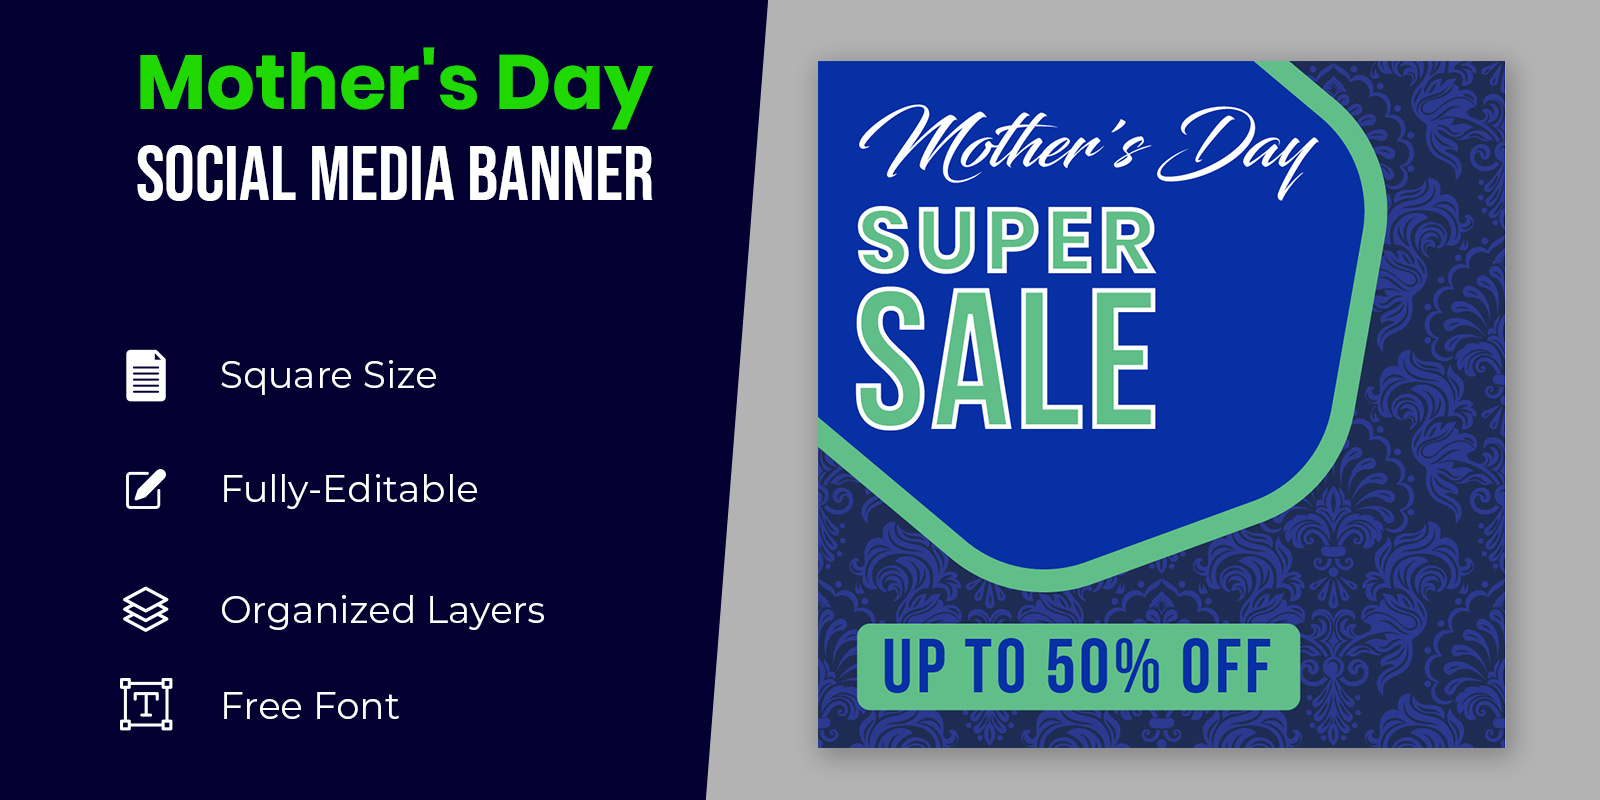 Mothers Day Super Sale Social Media Banner Design